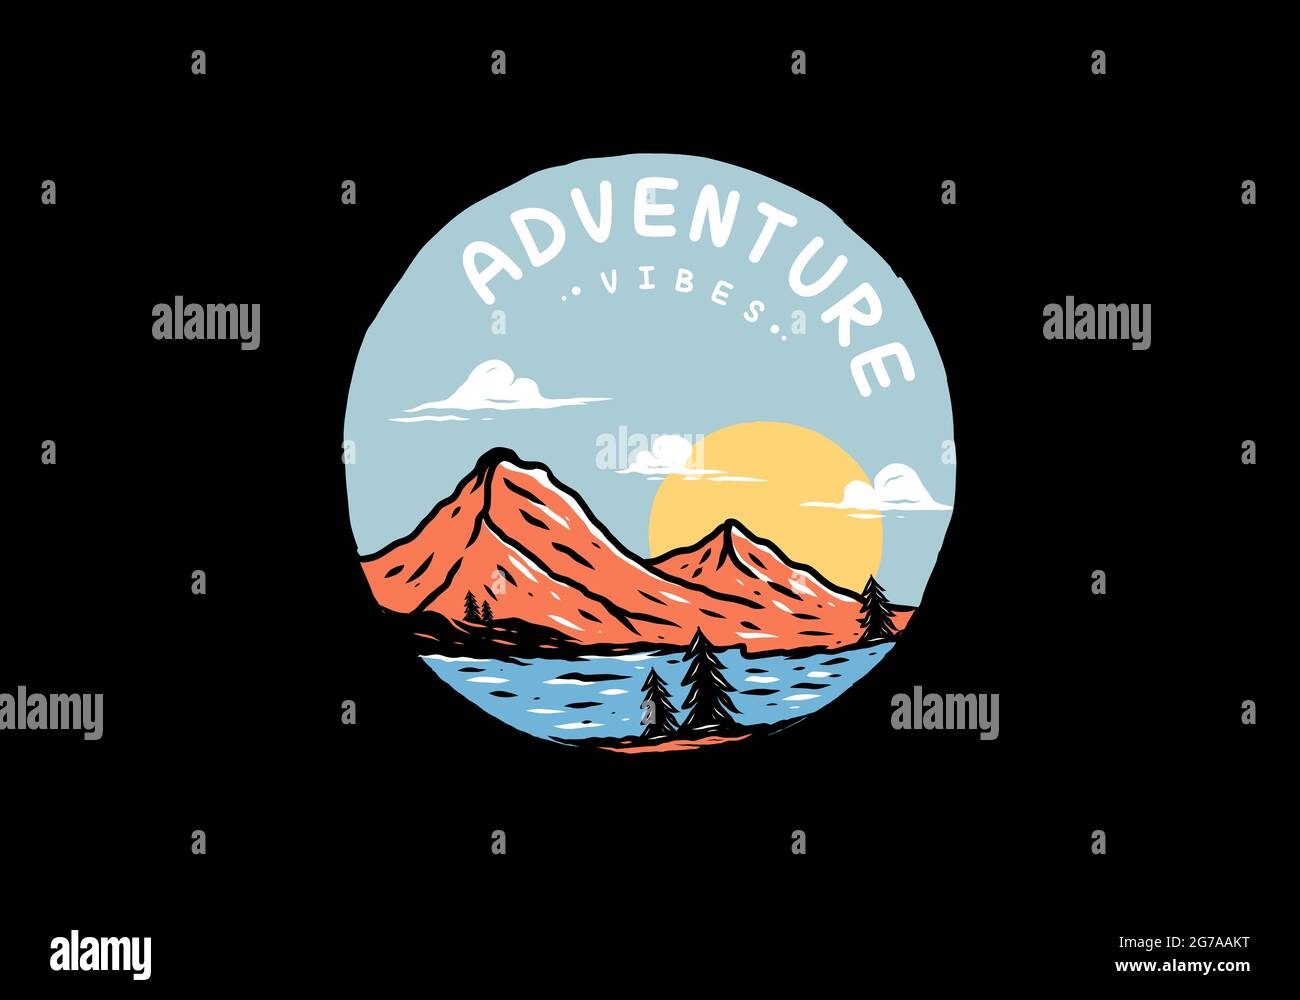 Abenteuer vibes Berg Illustration Zeichnung Design Stock Vektor